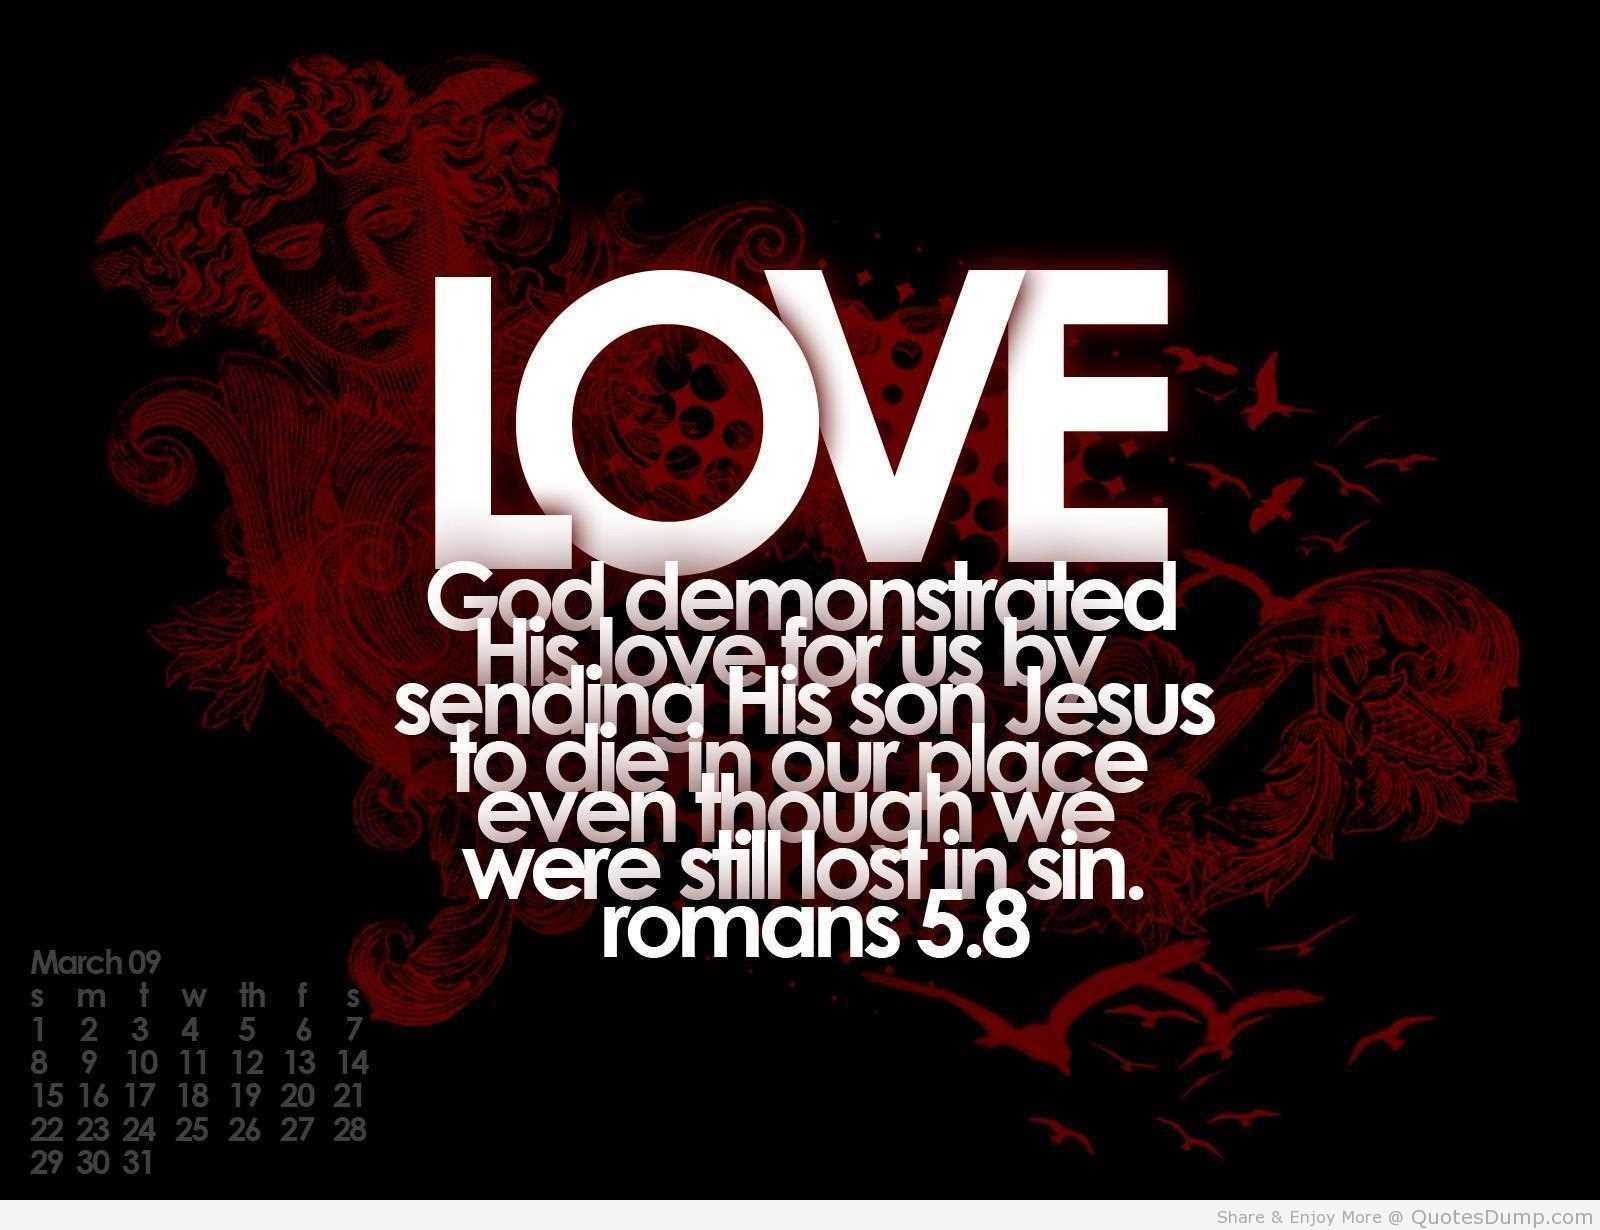  Christian  Quotes  True Love  QuotesGram